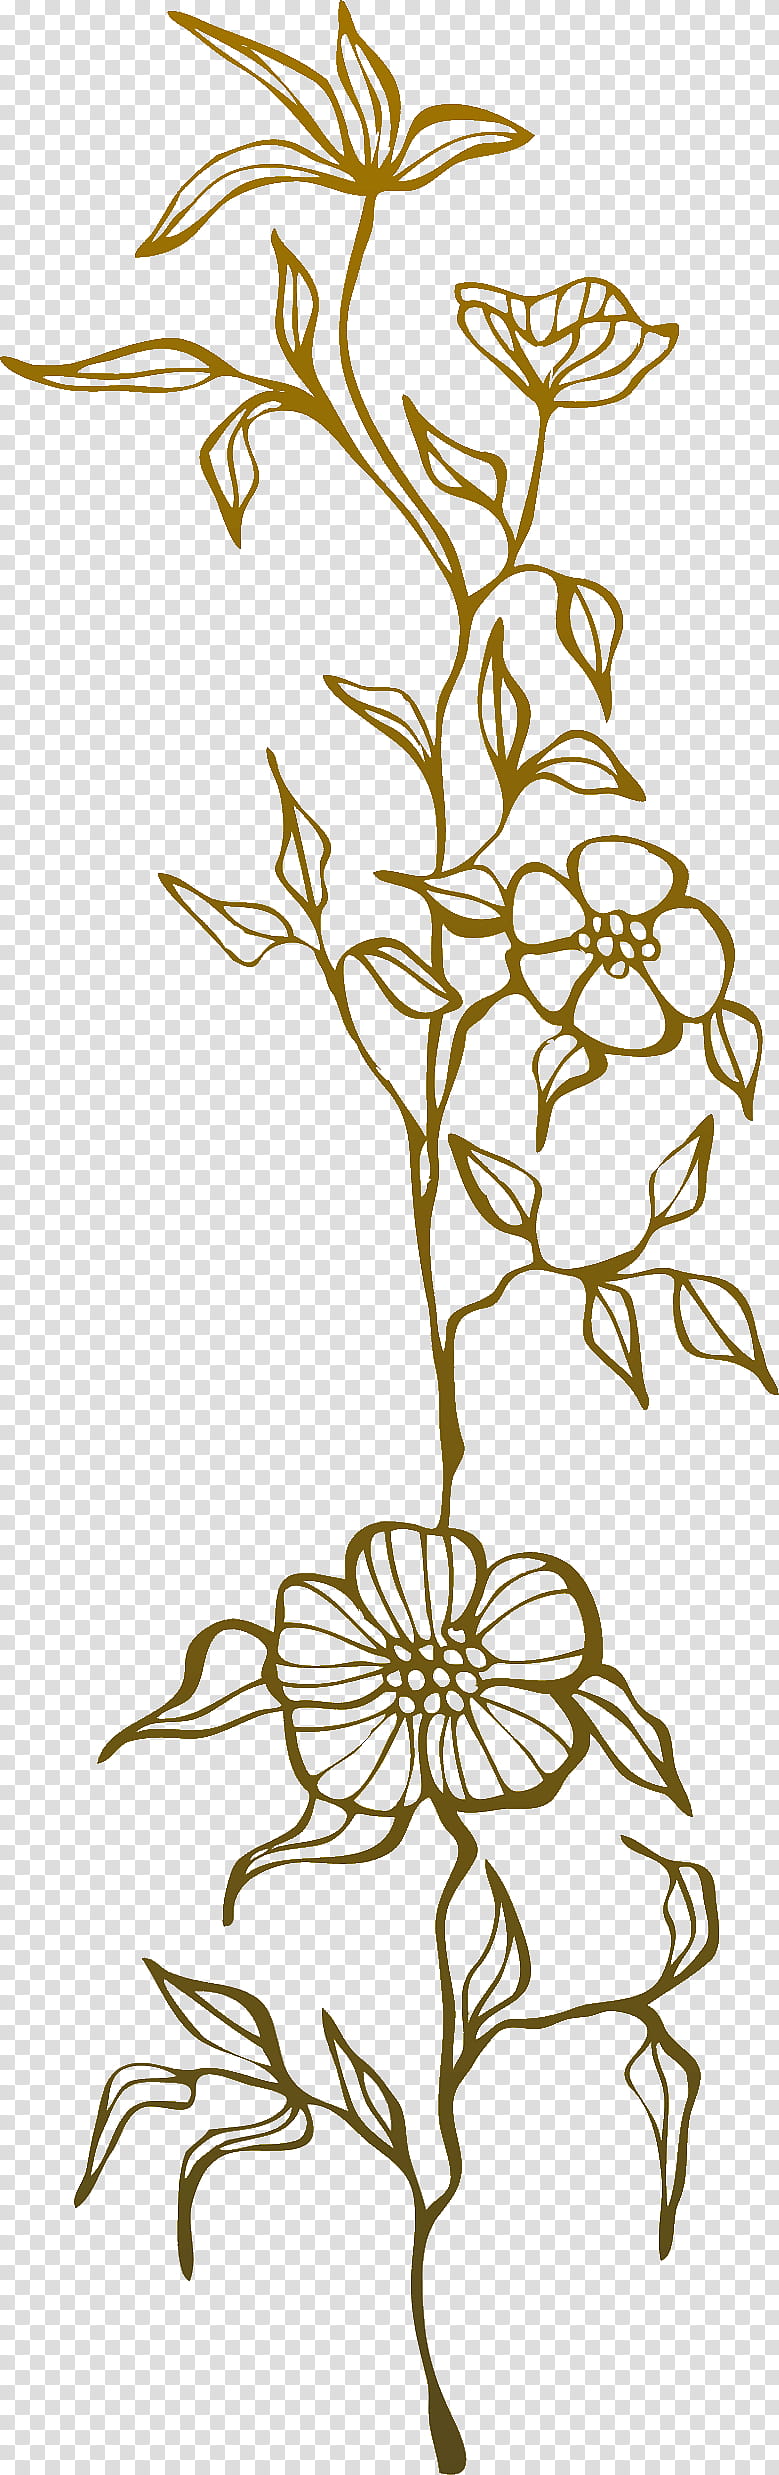 flower border flower background floral line, Line Art, Leaf, Plant, Plant Stem, Floral Design, Pedicel, Coloring Book transparent background PNG clipart